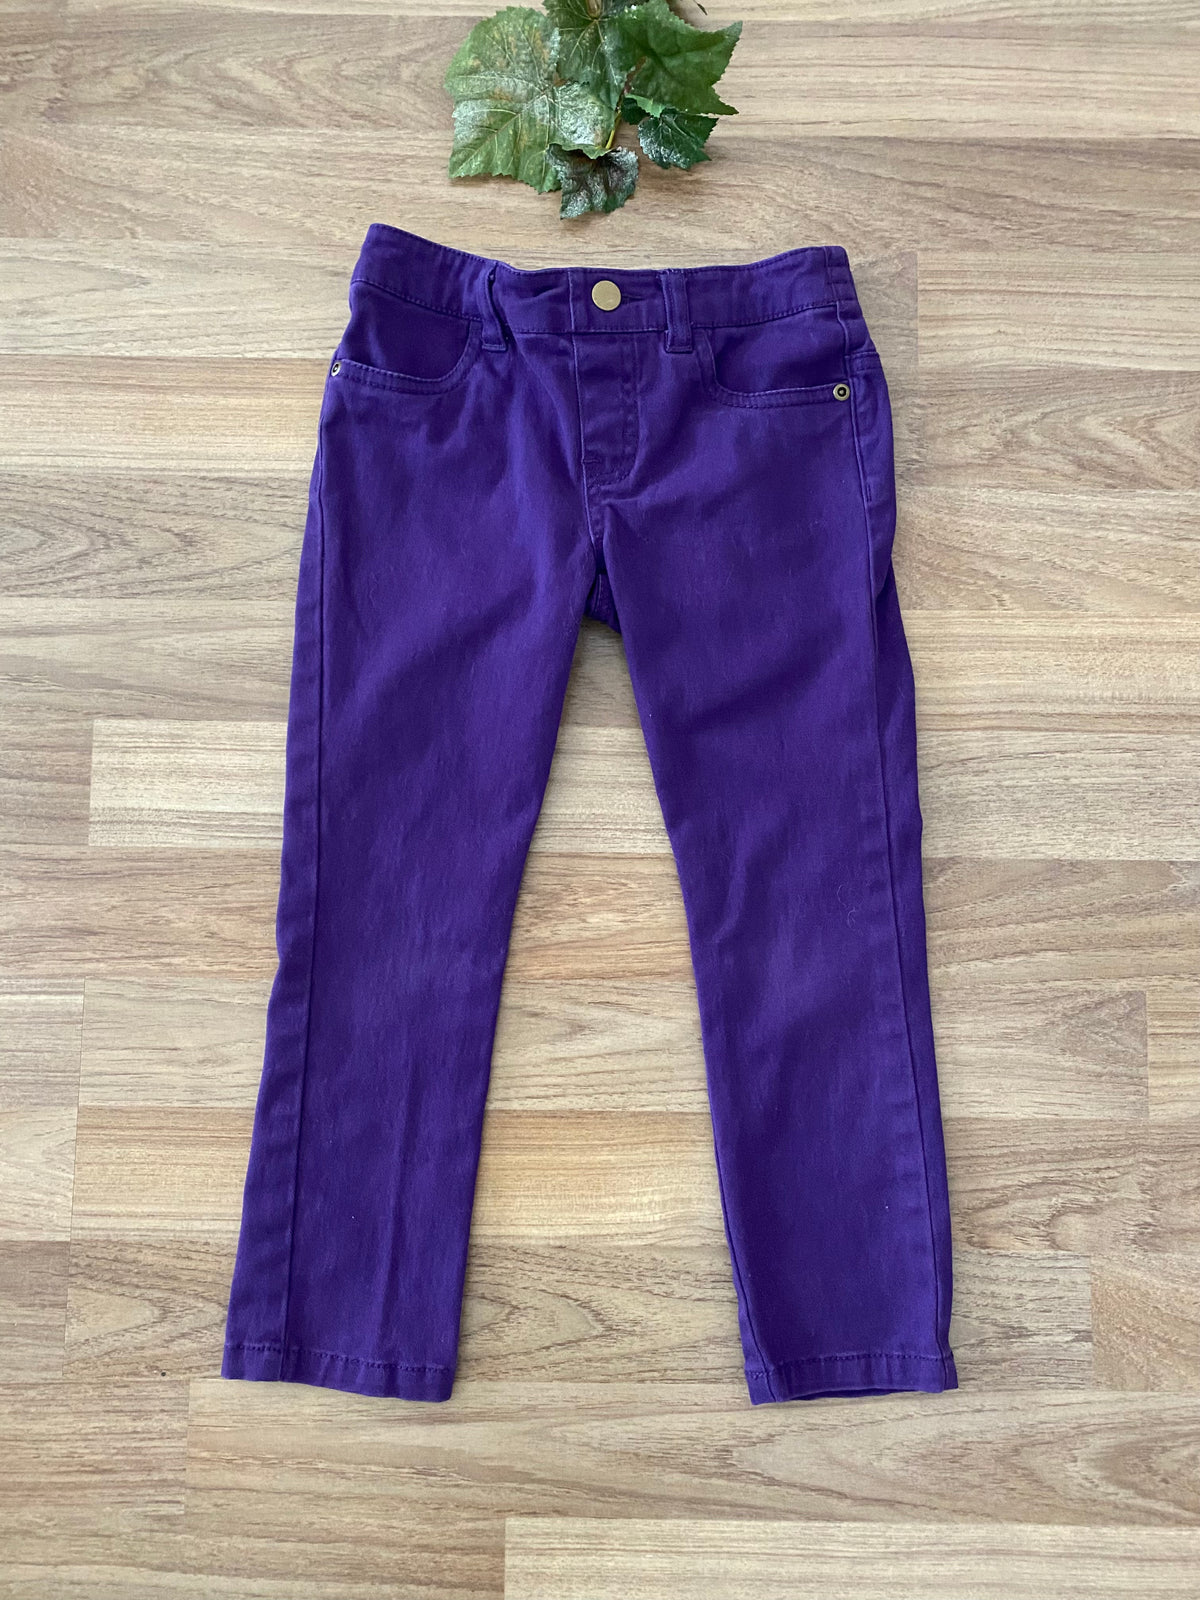 Pants (Girls Size 4)